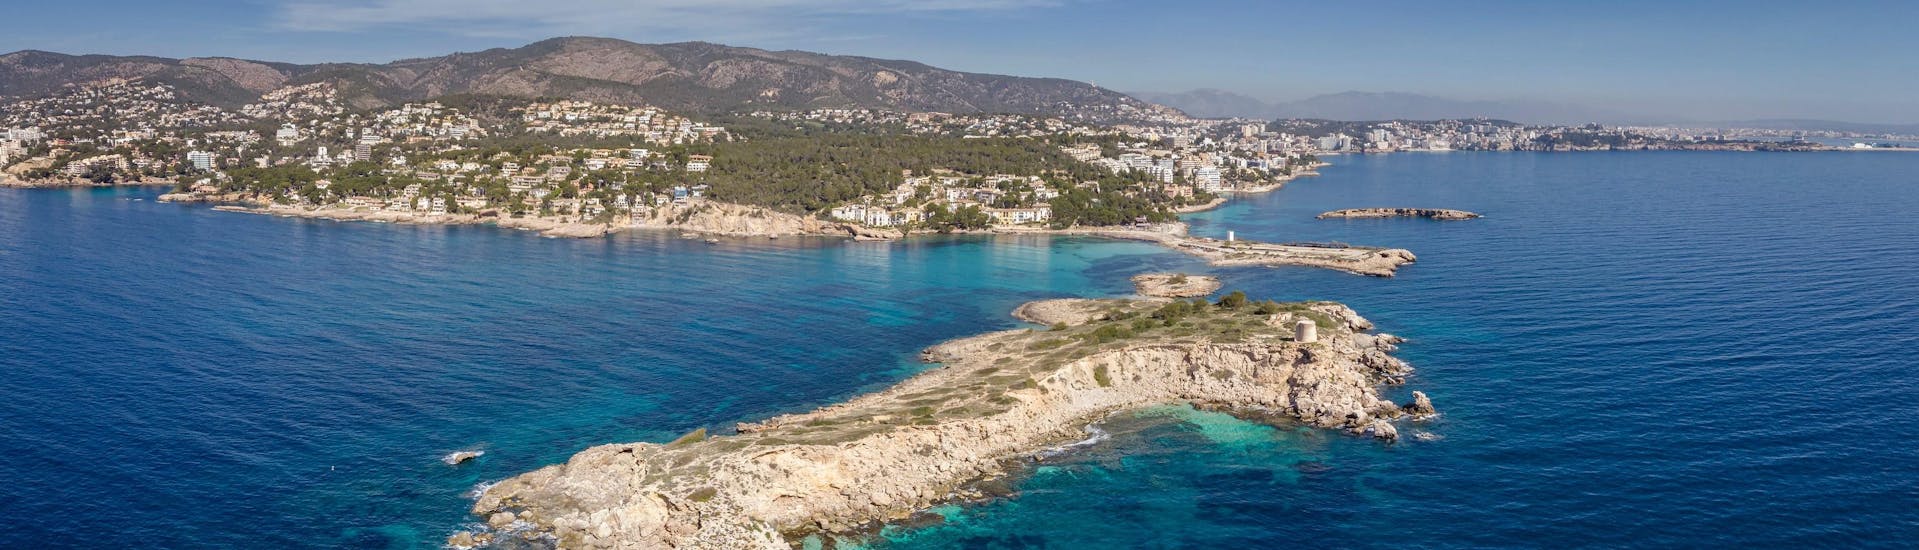 Blick auf den schönen Strand von Illetes, den Sie bei einer Bootstour von Palma de Mallorca aus entdecken können.